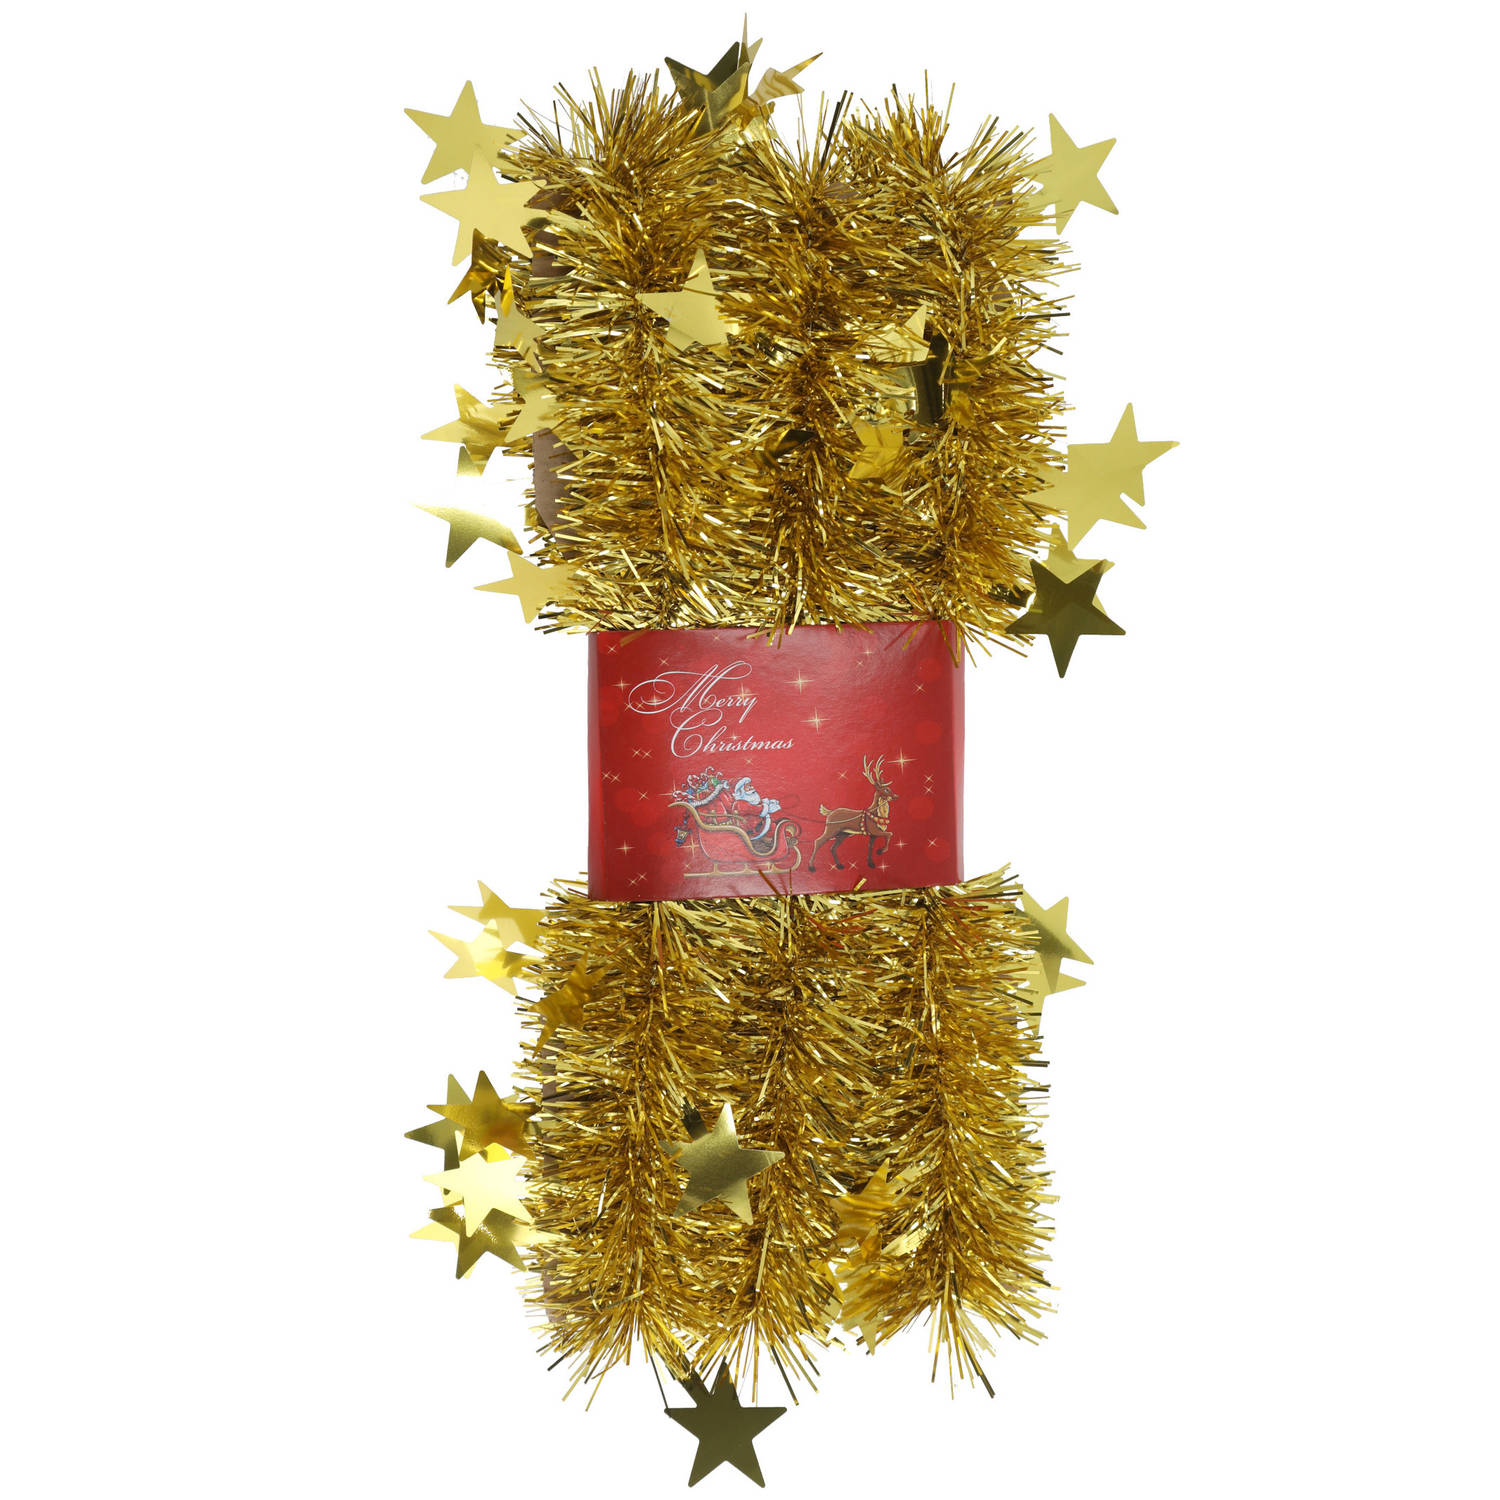 1x stuks lametta kerstslingers met sterretjes goud 200 x 6,5 cm - Kerstslingers